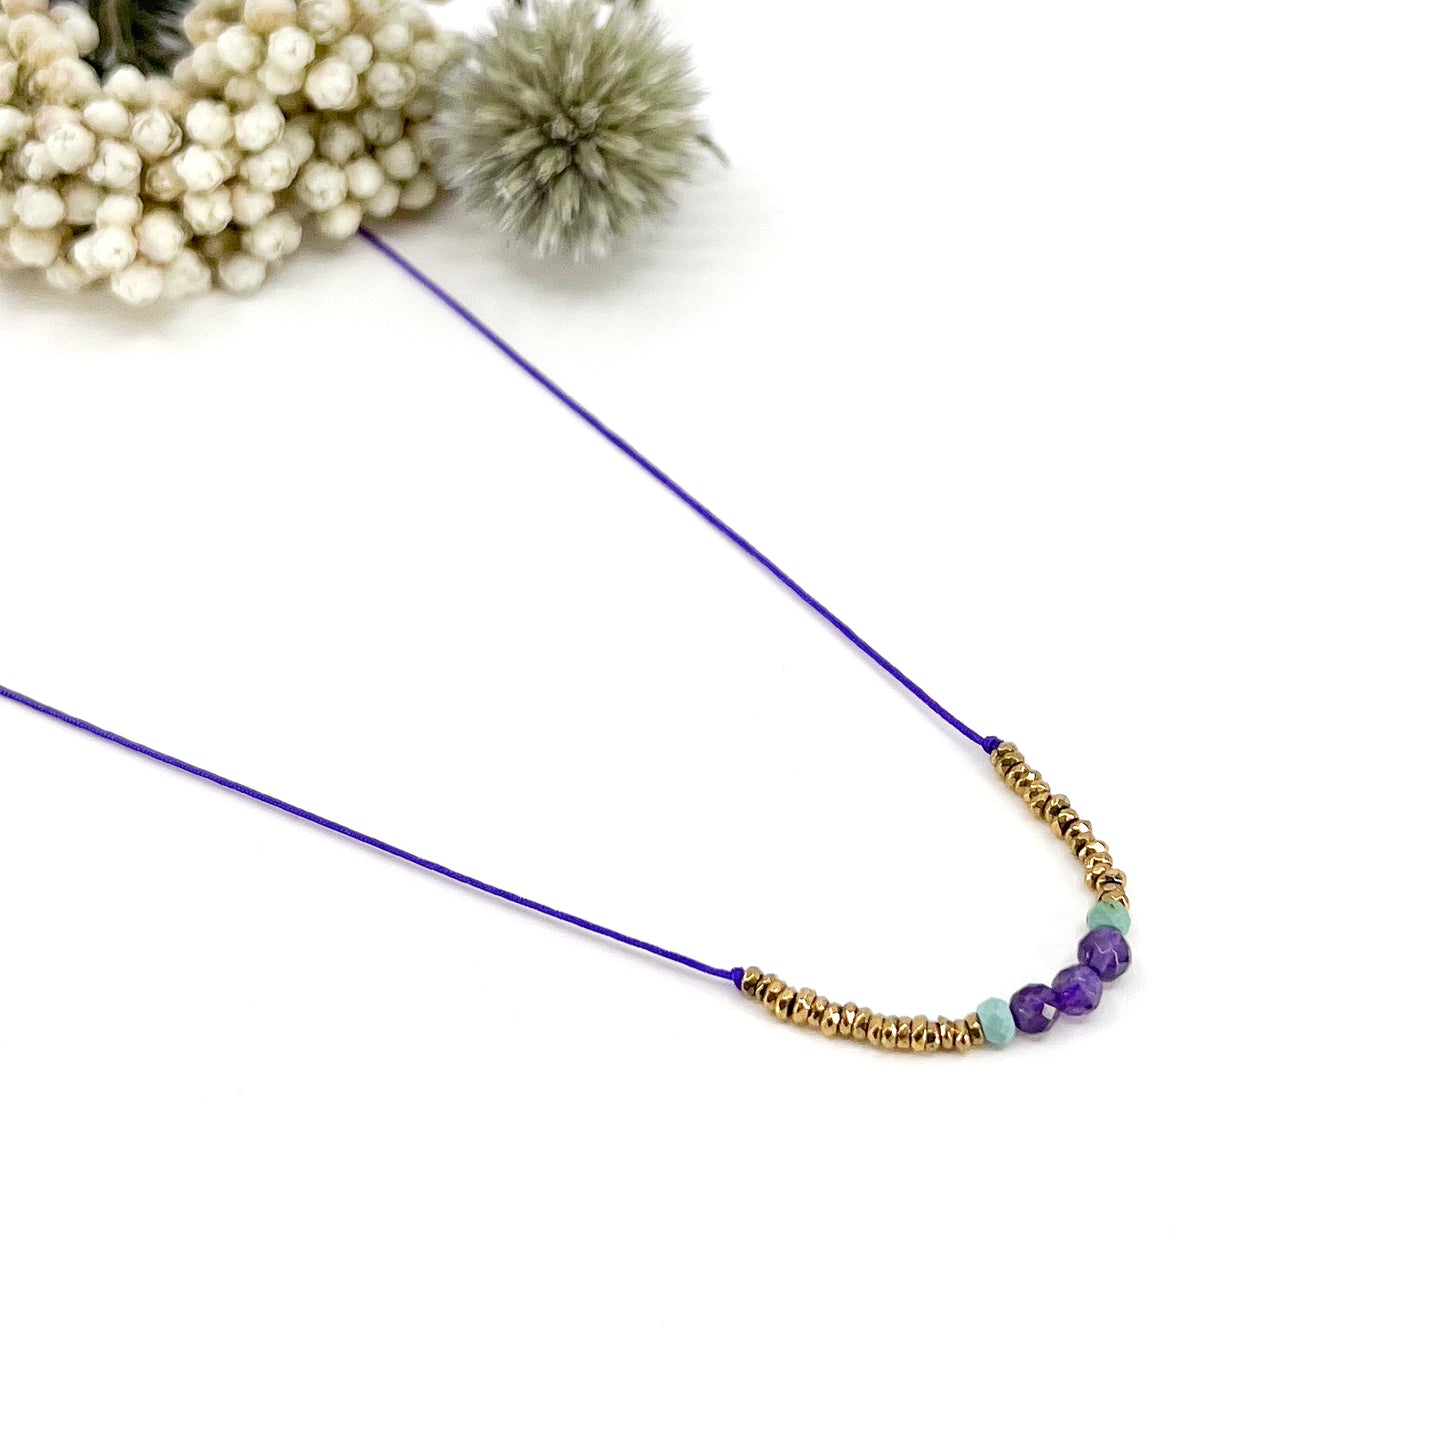 Collier sur cordon ajustable. Pierres fines naturelles : 3 perles d'améthyste encradrées par deux perles de Turquoise et des hématites dorées.